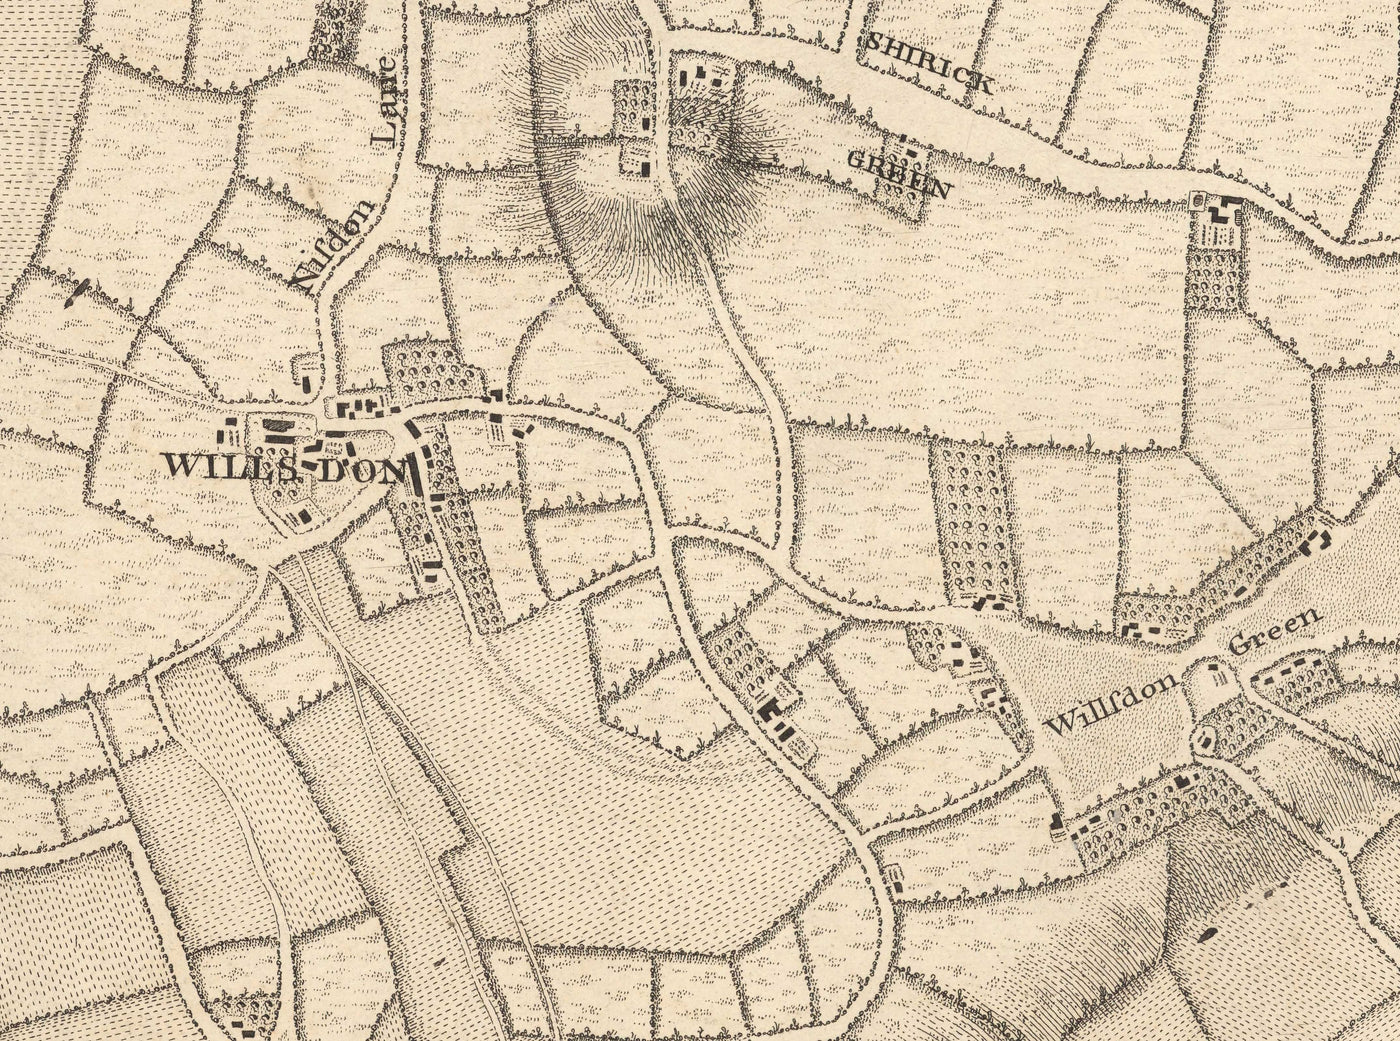 Ancienne carte de l'Ouest et du Nord-Ouest de Londres en 1746 par John Rocque - Hampstead, Kingsbury, Neasden, Willesden, West End, NW2, NW3, NW5, NW6, NW8, NW10, W9, W10